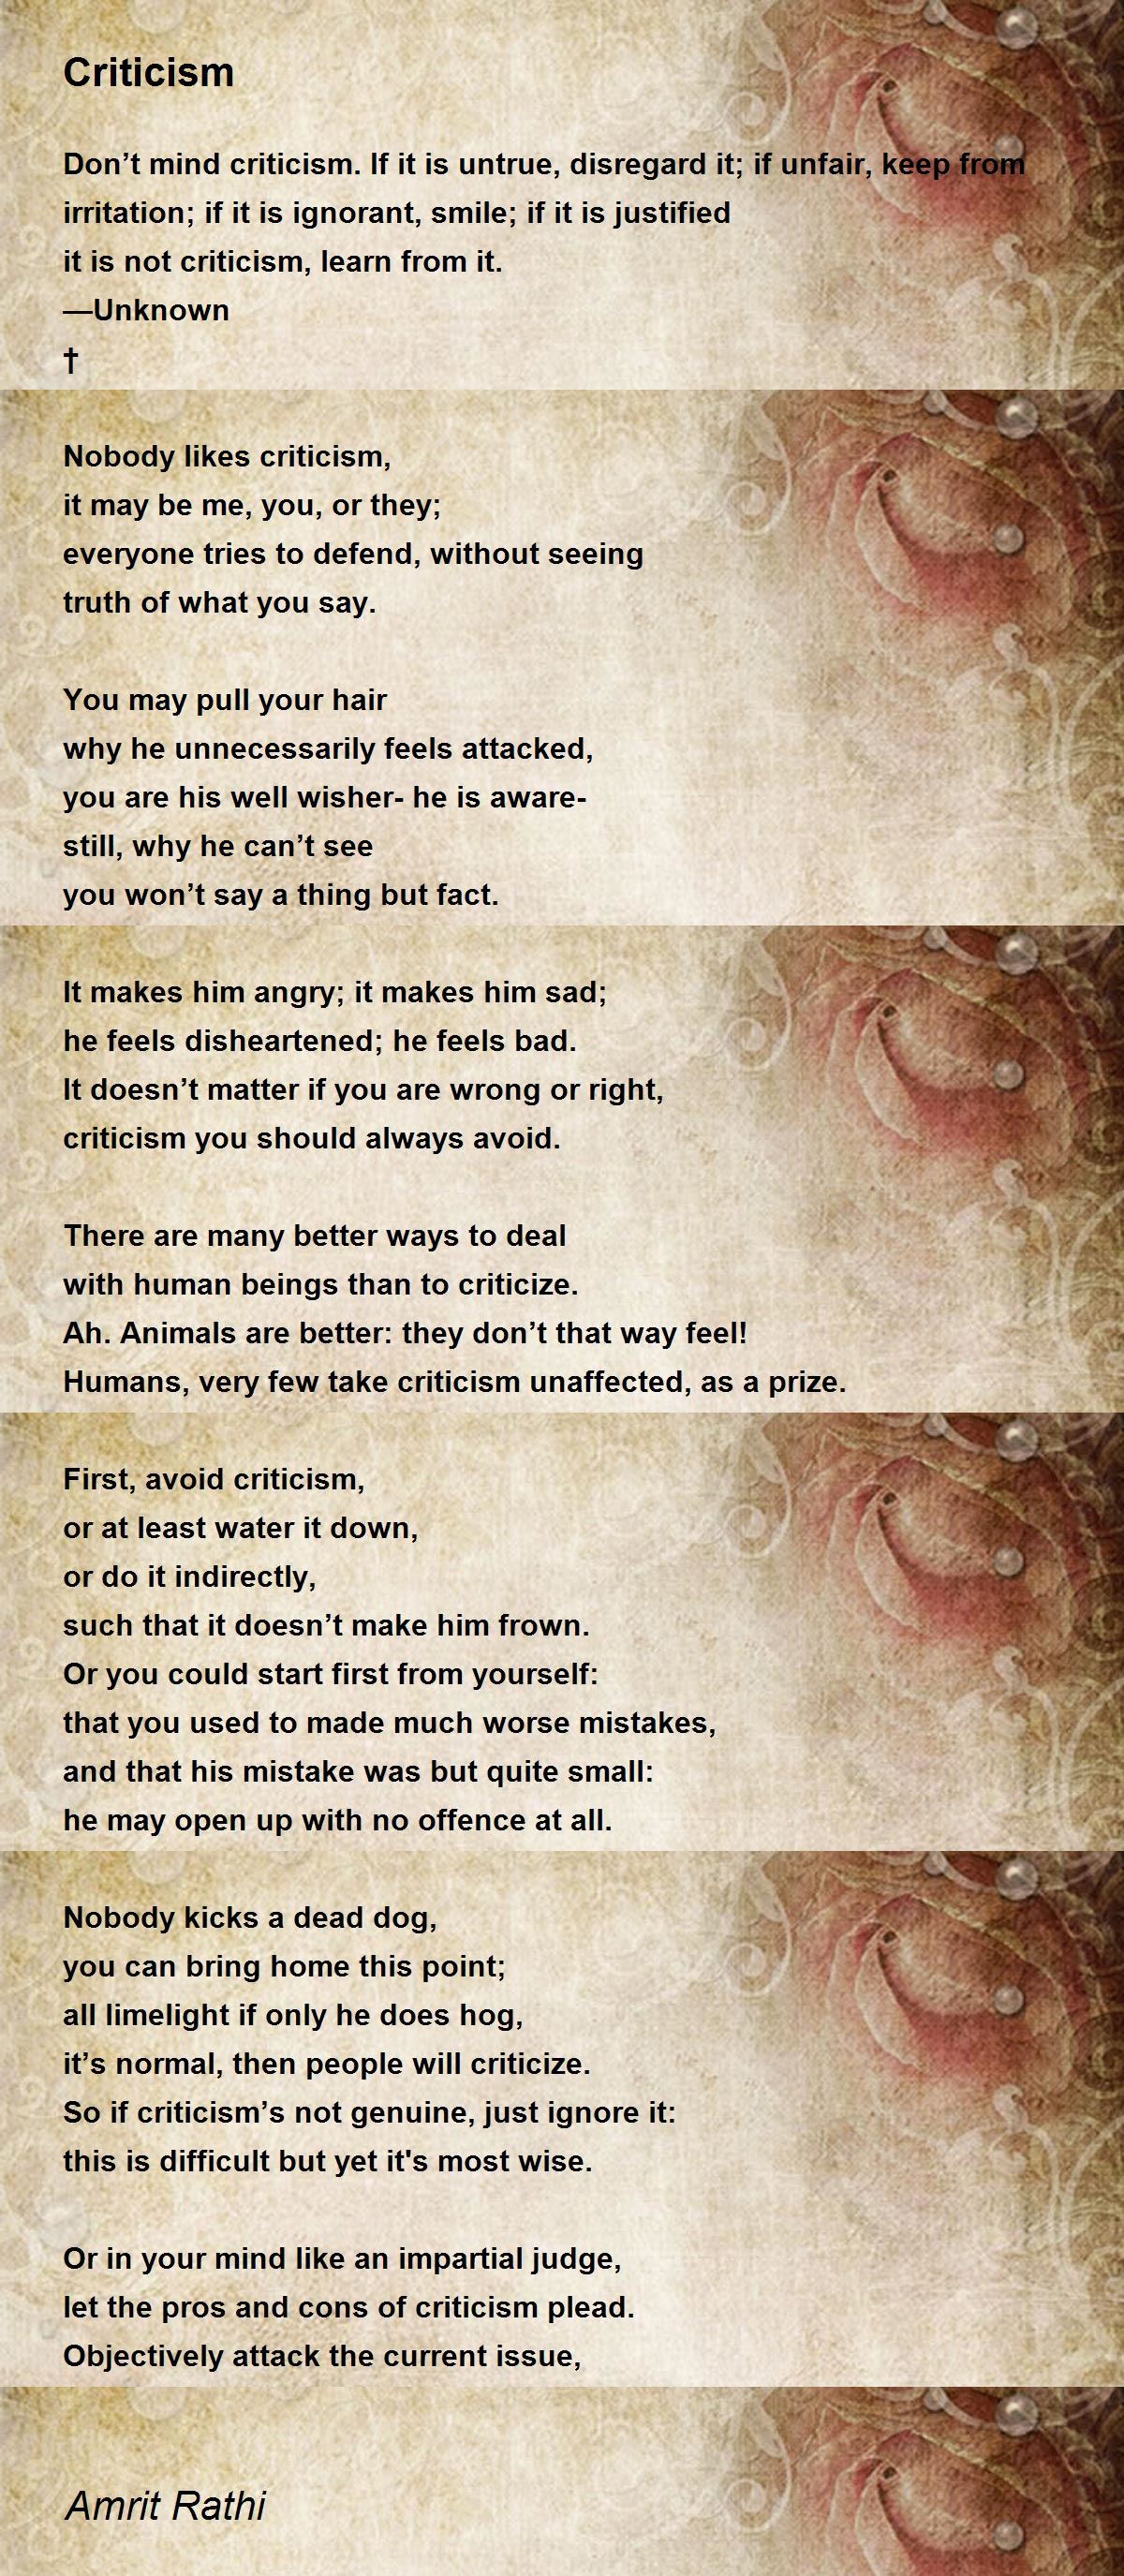 Criticism - Criticism Poem by Amrit Rathi